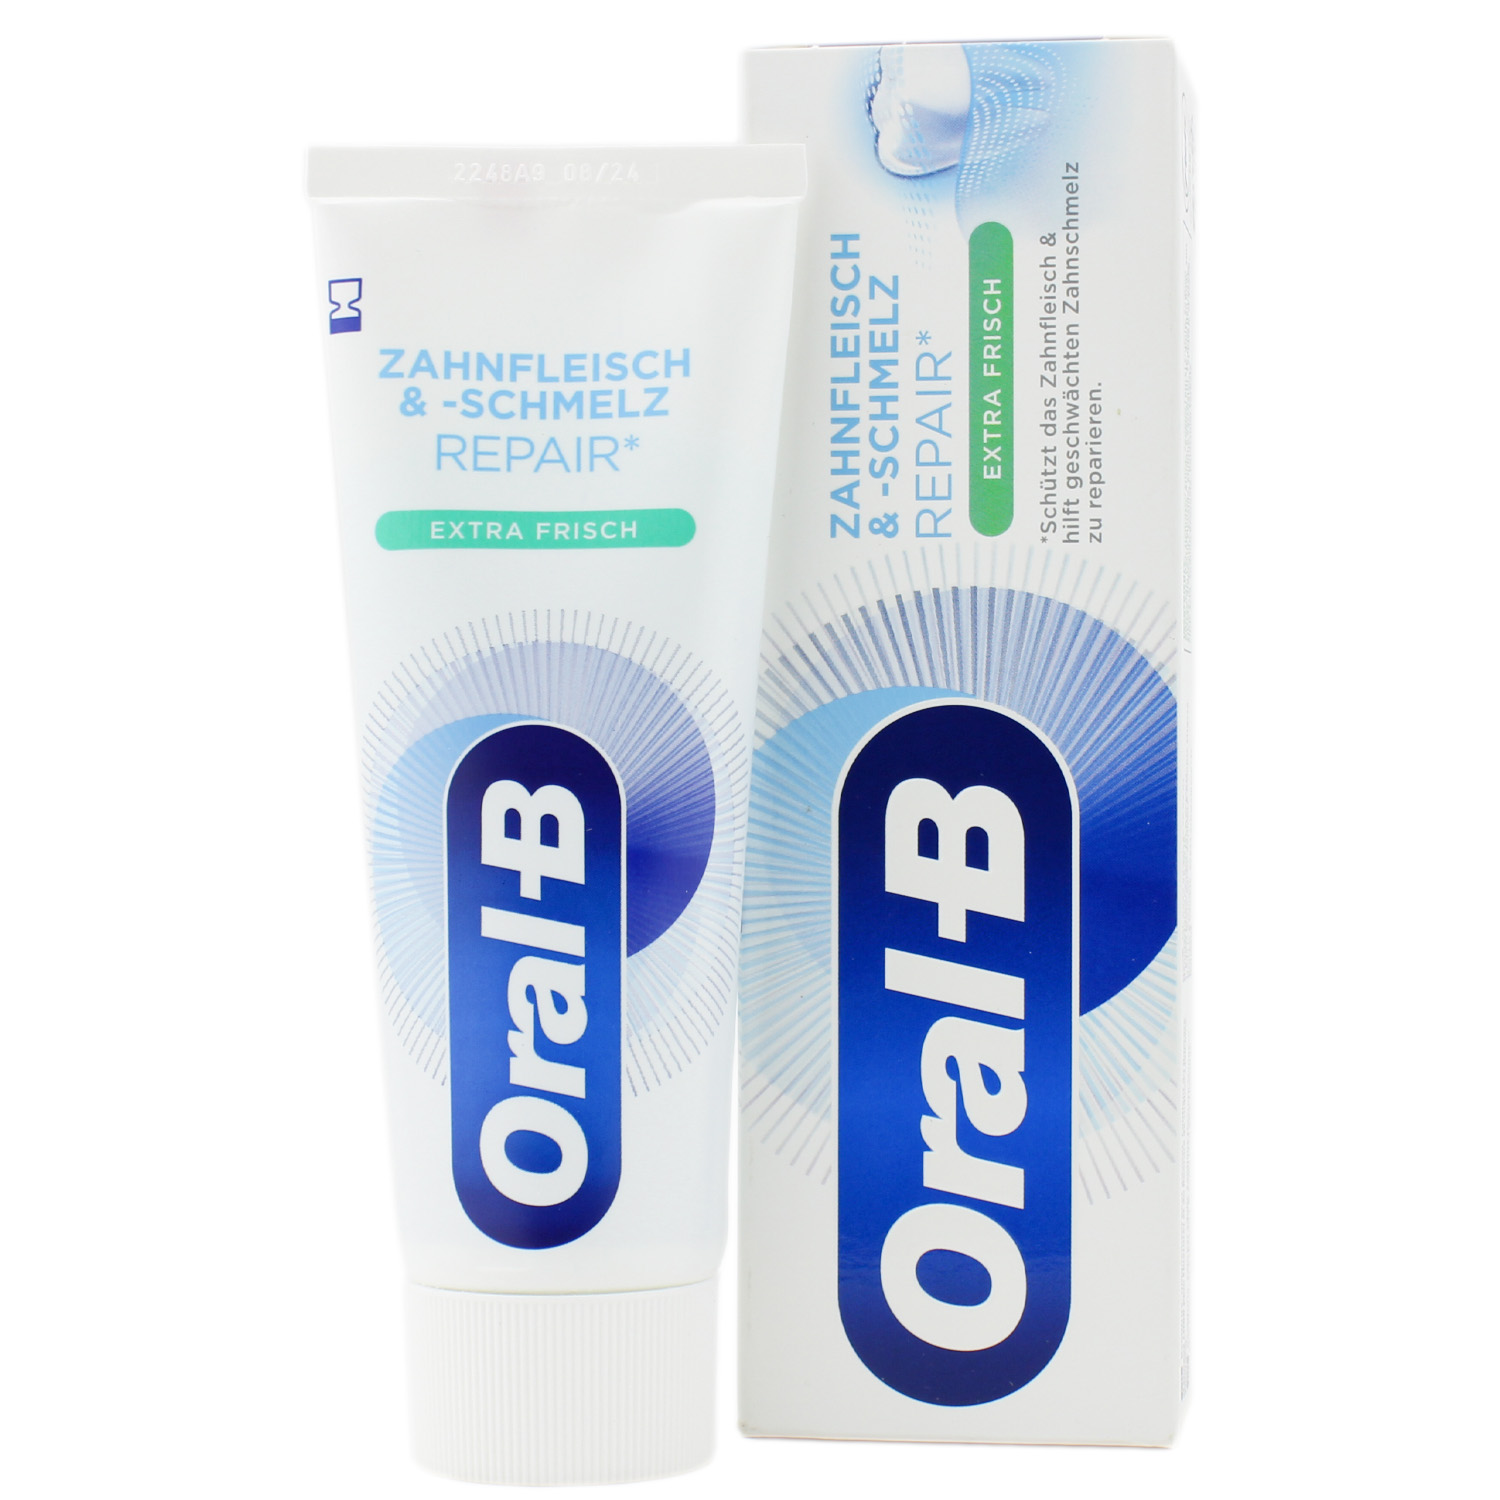 Oral-B Zahnfleisch & -schmelz Repair Extra Frisch Zahncreme 75ml